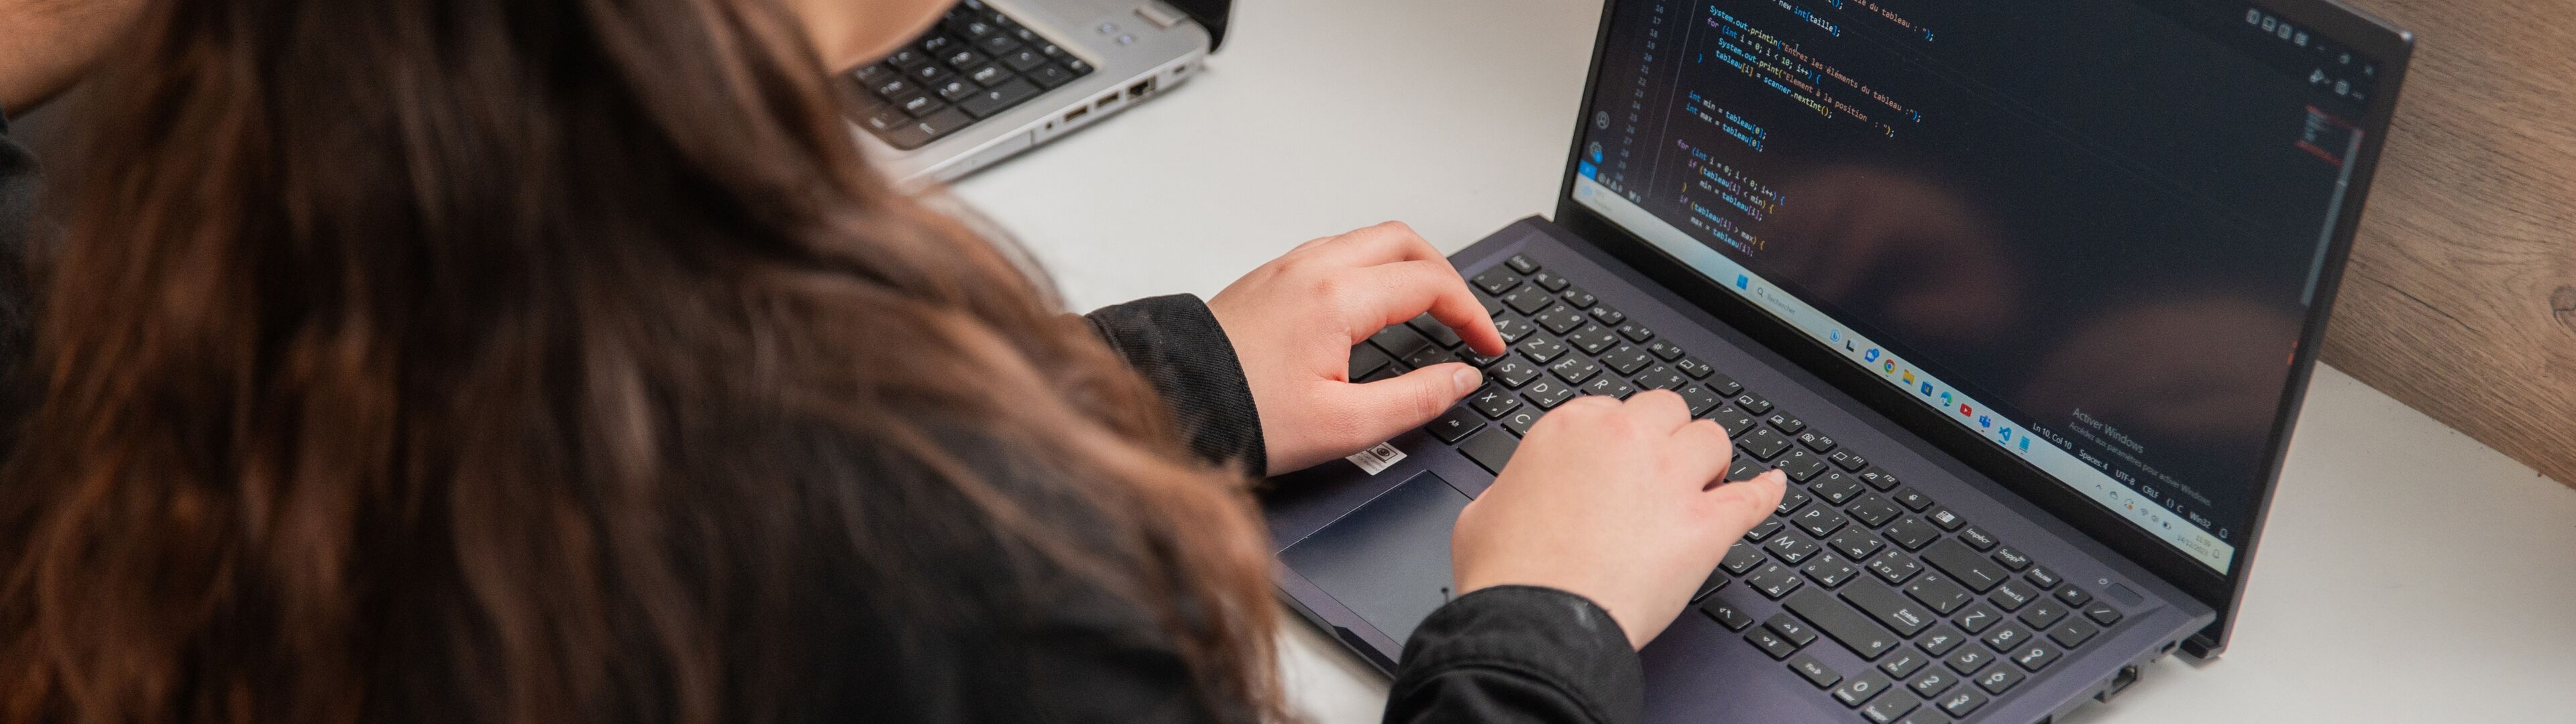 Une femme programme sur un ordinateur portable, le code est visible à l'écran.